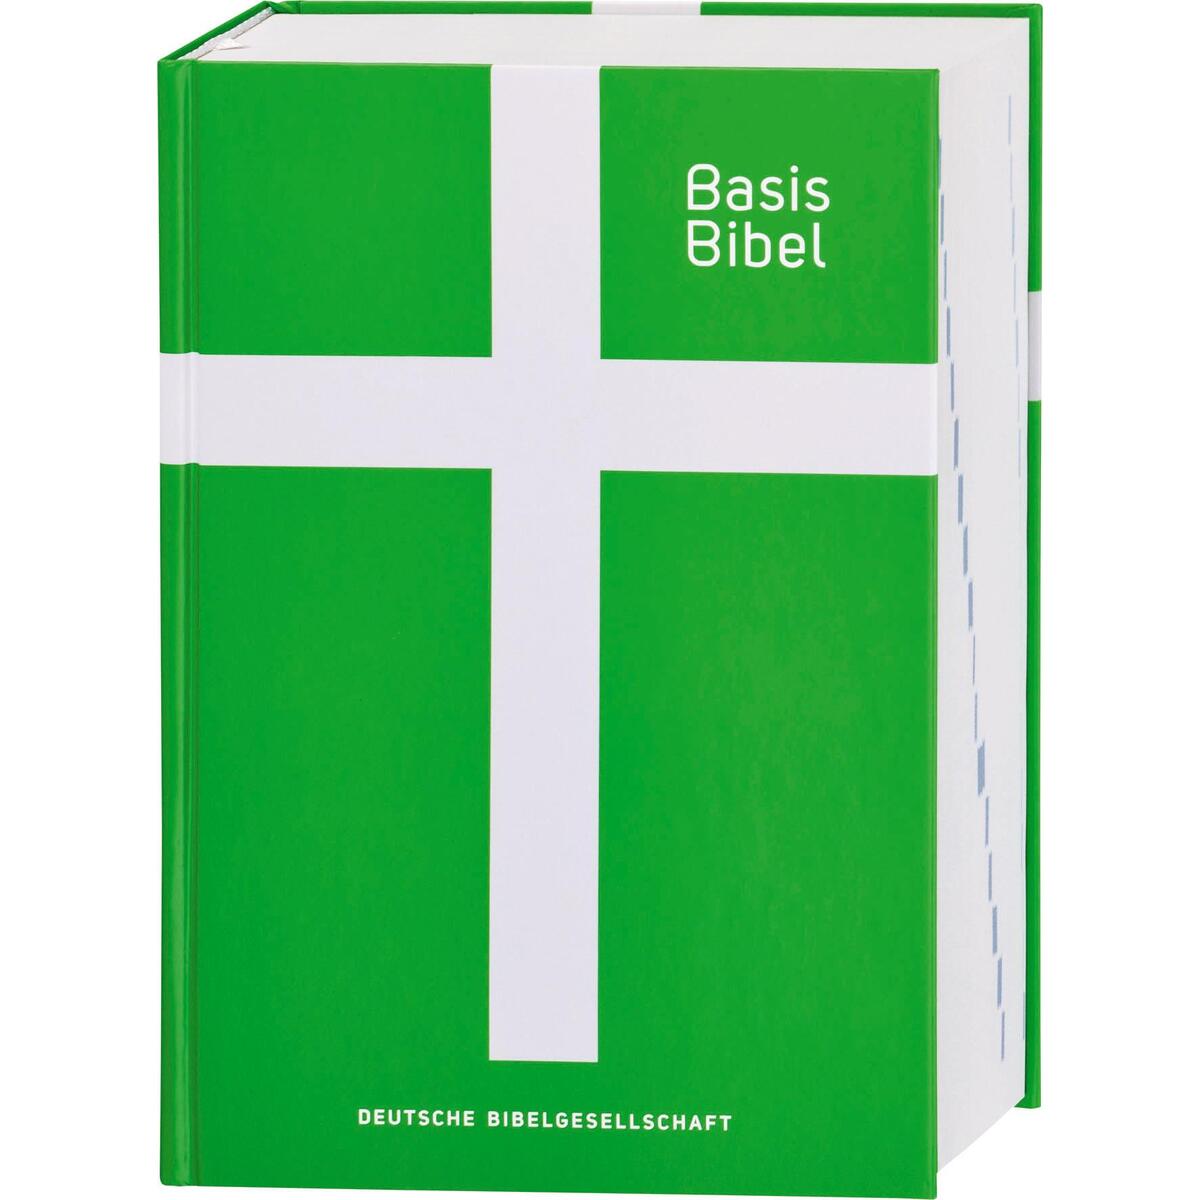 Basisbibel. Die Kompakte. Grün. Der moderne Bibel-Standard: neue Bibelübersetzun... von Deutsche Bibelges.